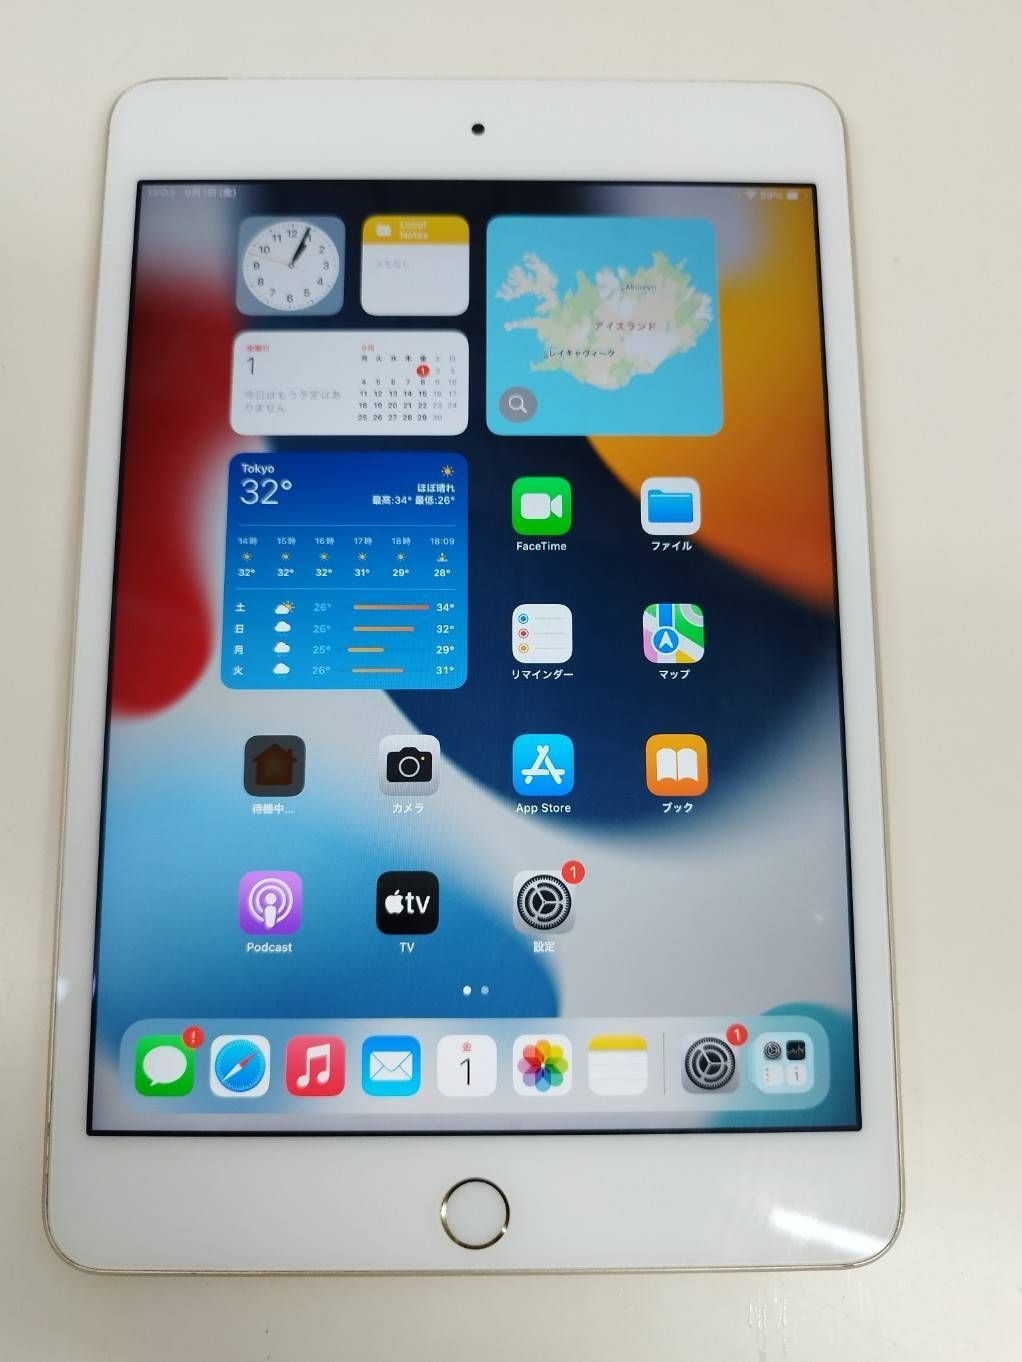 SIMフリー】iPad Mini4 NK752J/A (A1550) MK752J/A同等品 64GB - メルカリ